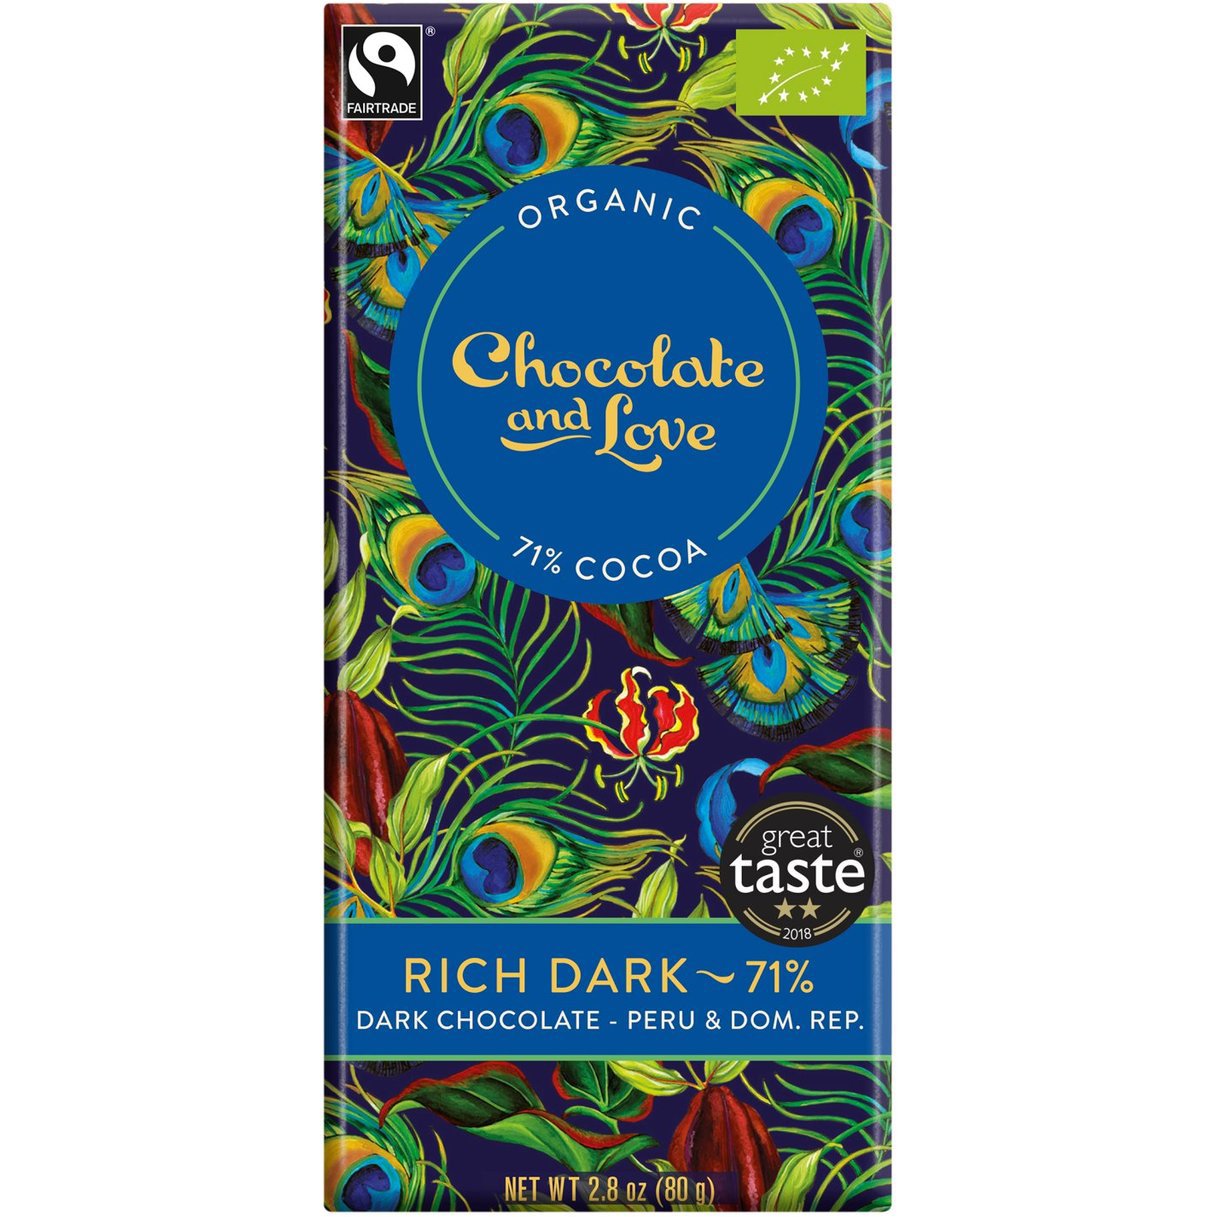 Органічний чорний шоколад Chocolate and Love 71% какао 80 г - фото 1